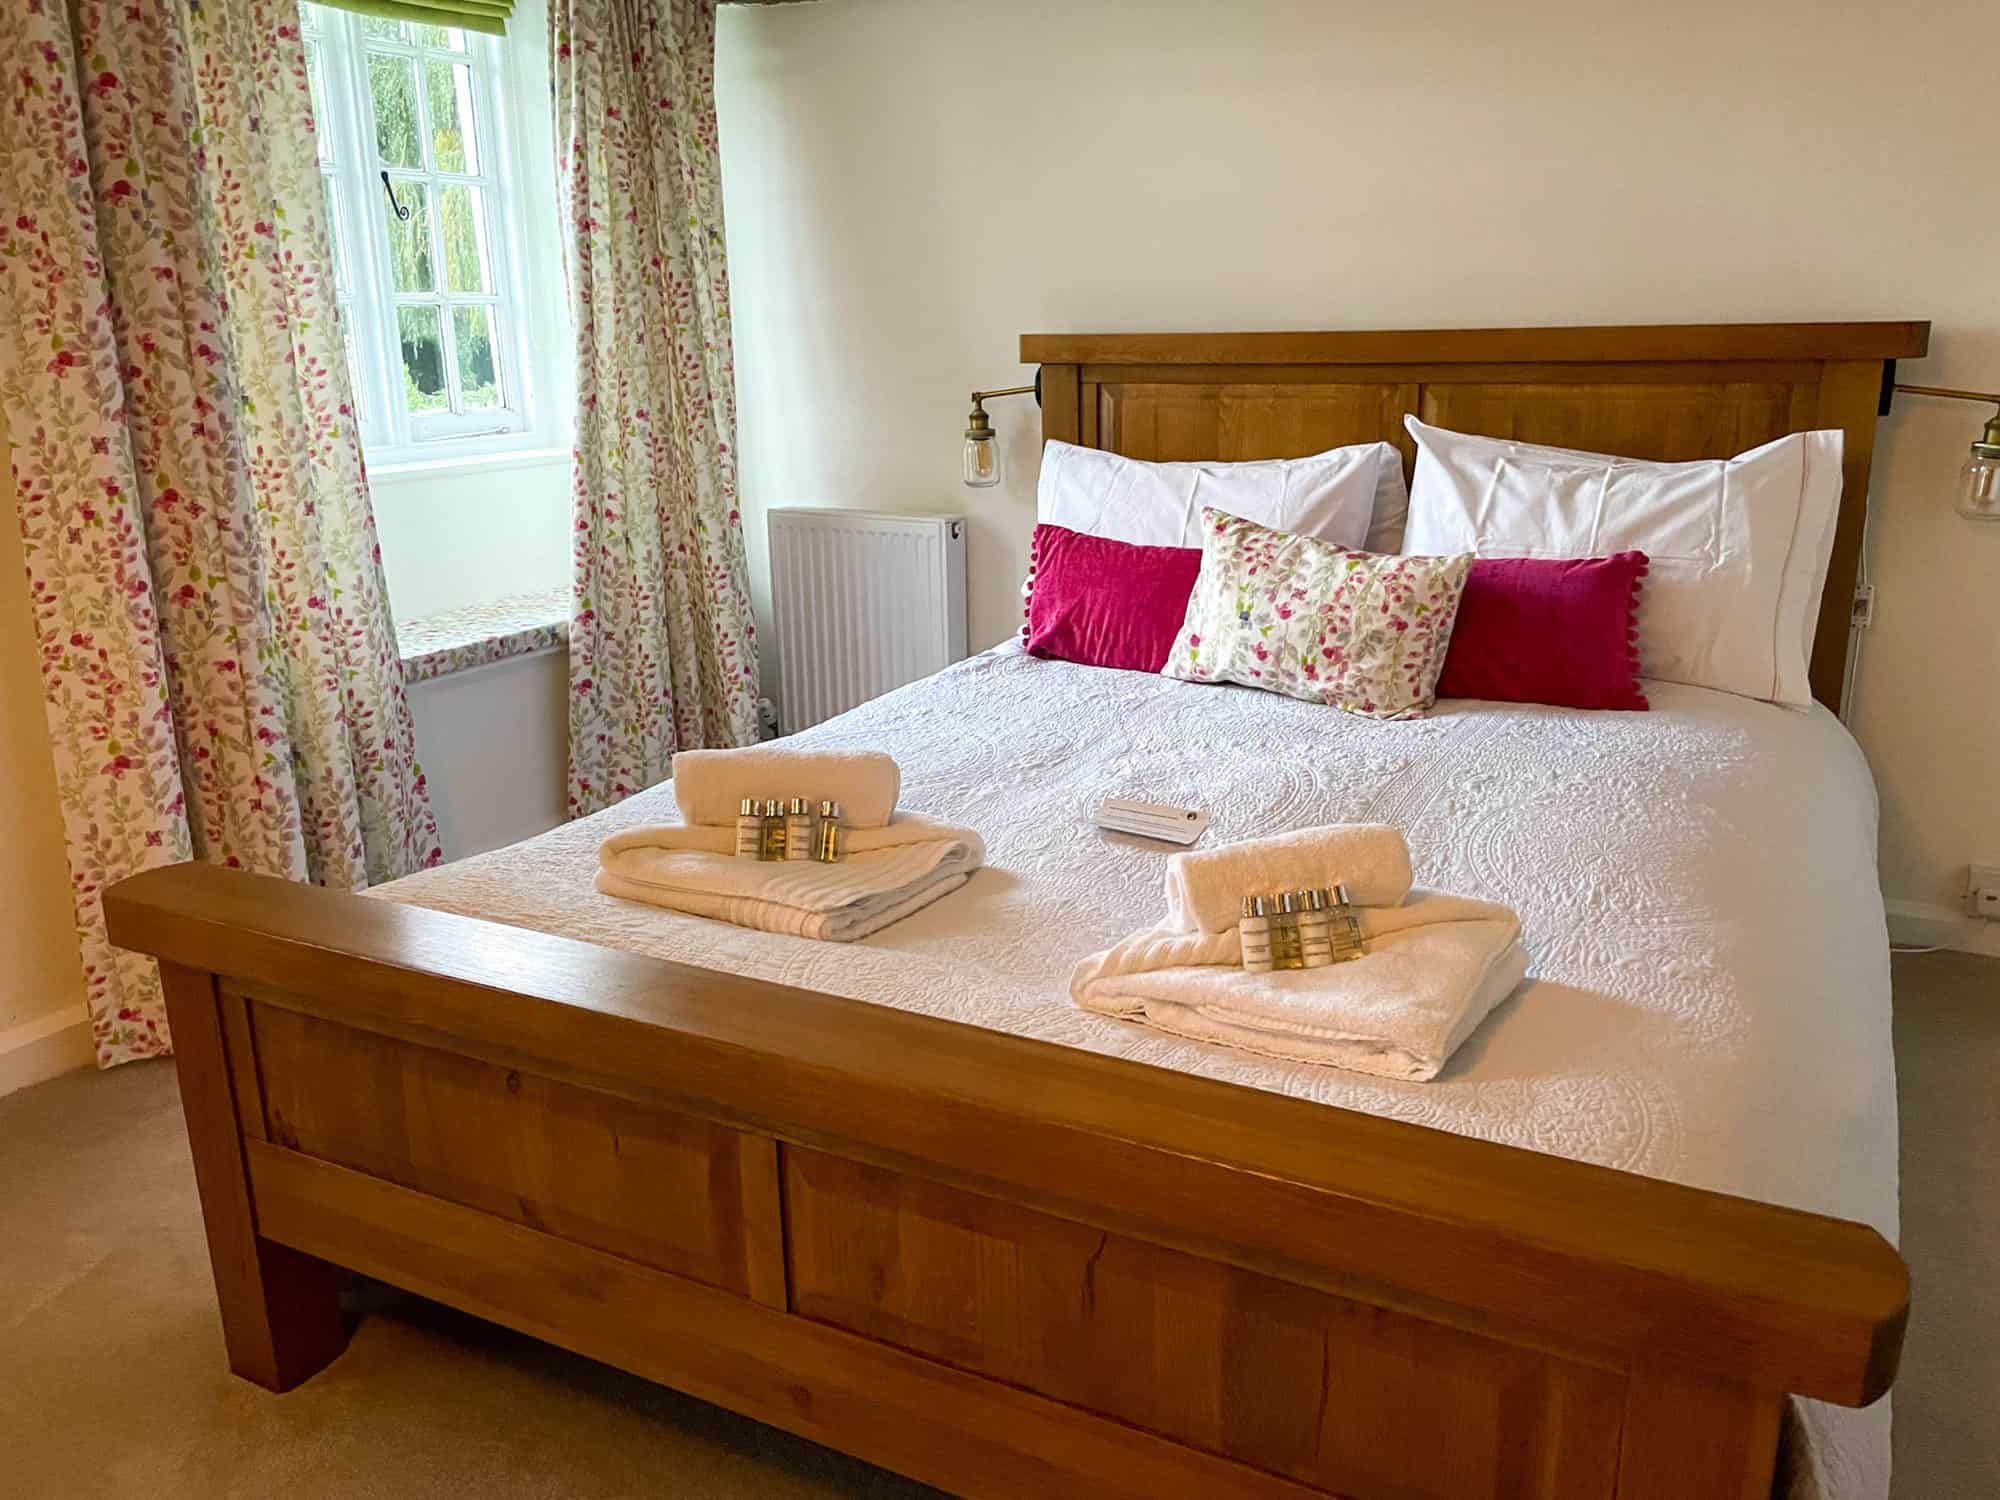 UK - Somerset - Sunrise cottage double bedroom